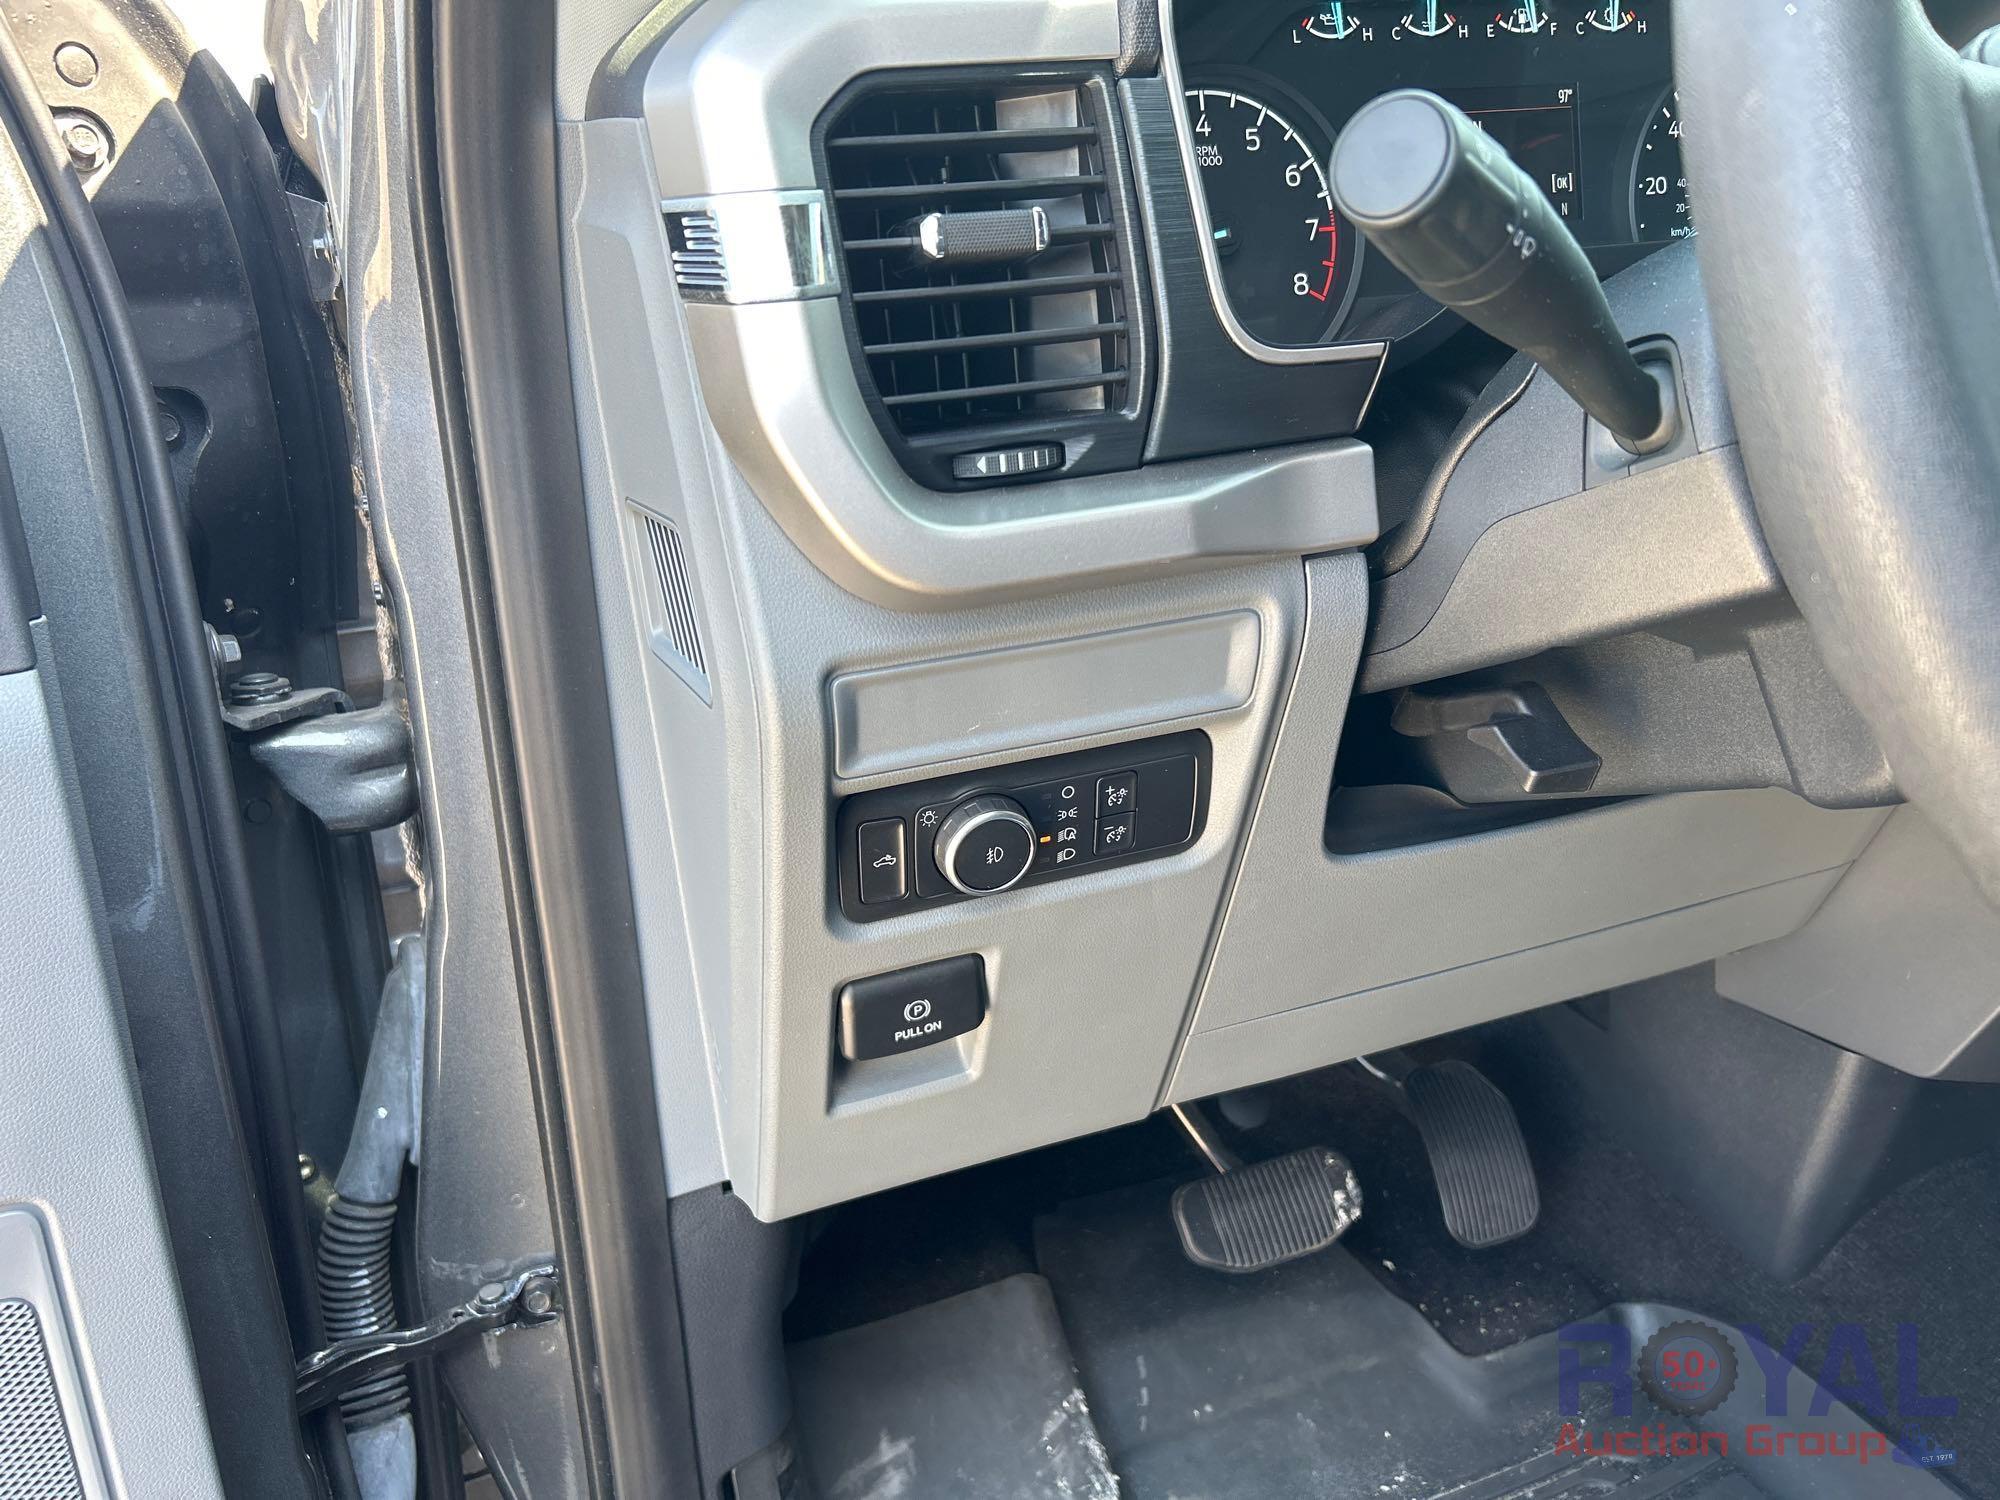 2021 Ford F150 4x4 Crew Cab Pickup Truck